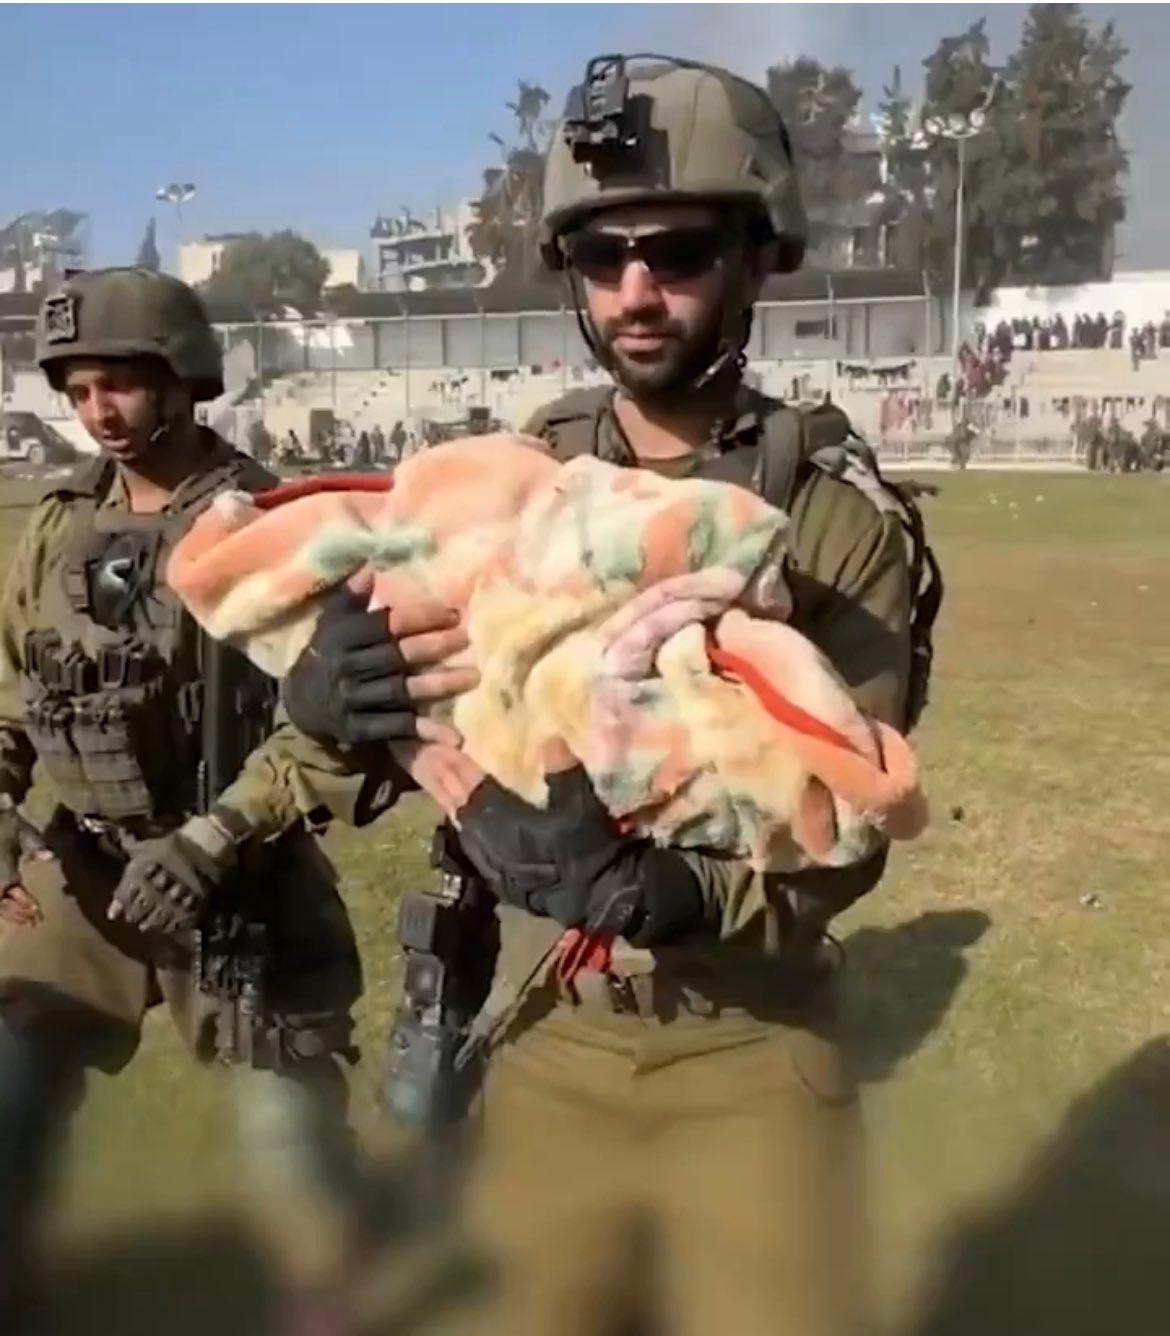 ضابط إسرائيلي يدعى "هارئيل إيتاح" -يشغل منصب قائد فرقة في لواء جفعاتي التابعة للجيش- على خطف رضيعة فلسطينية من داخل منزلها في قطاع غزة